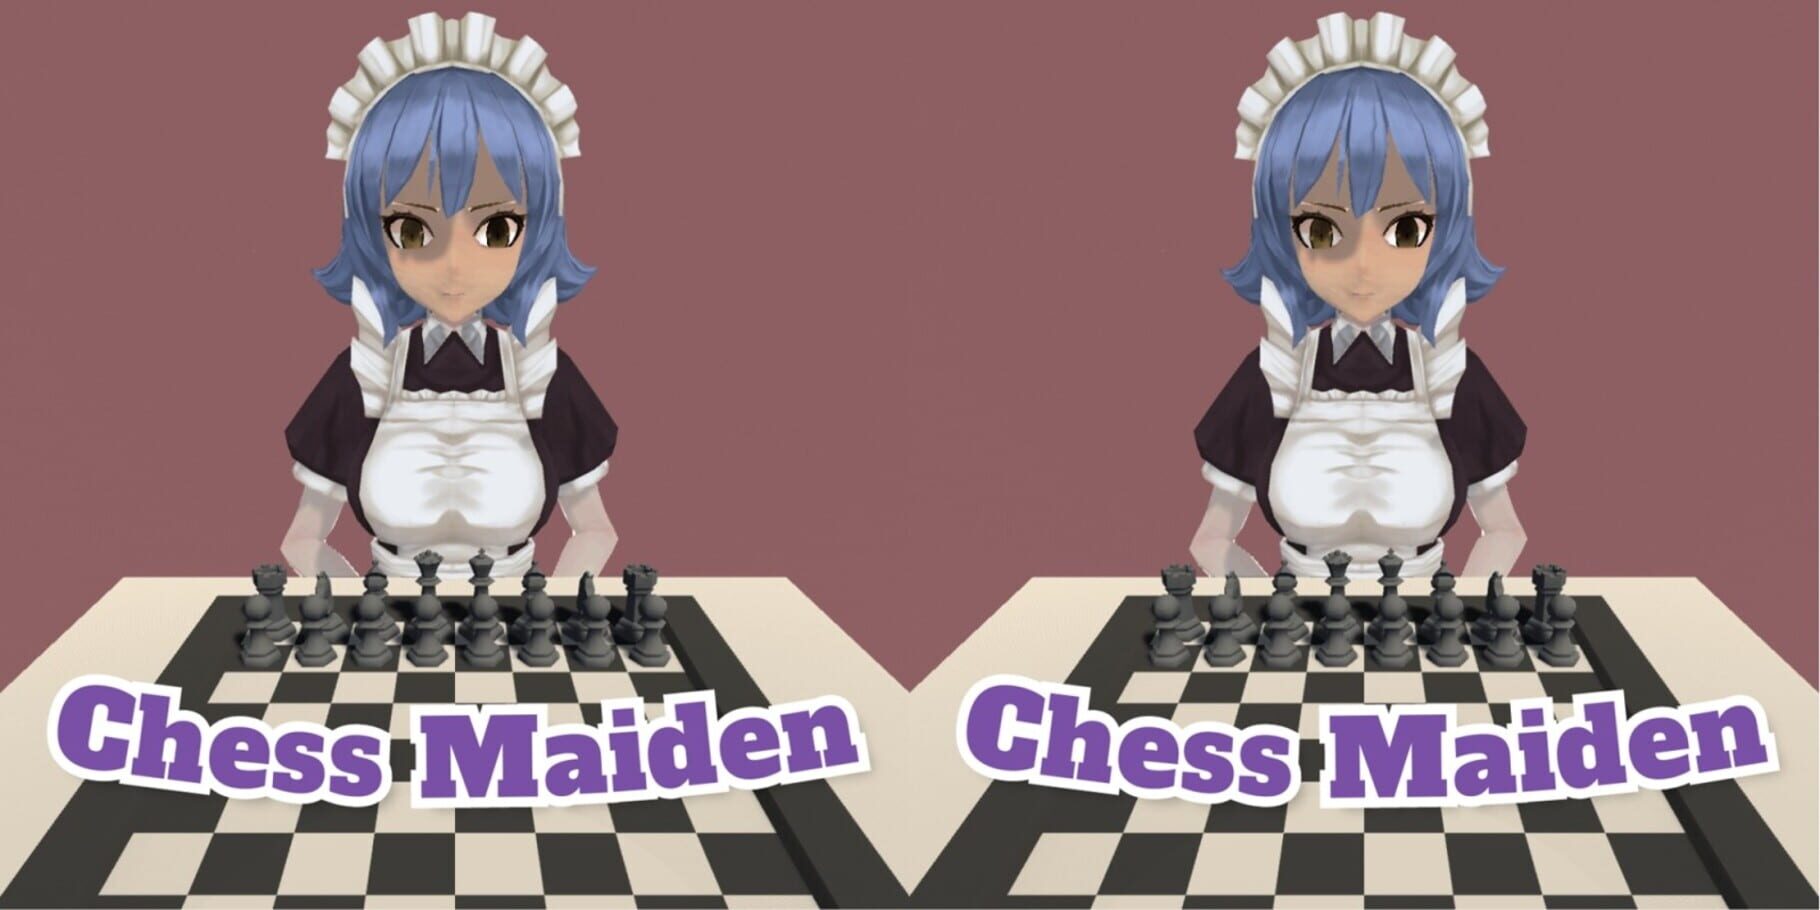 Chess Maiden artwork